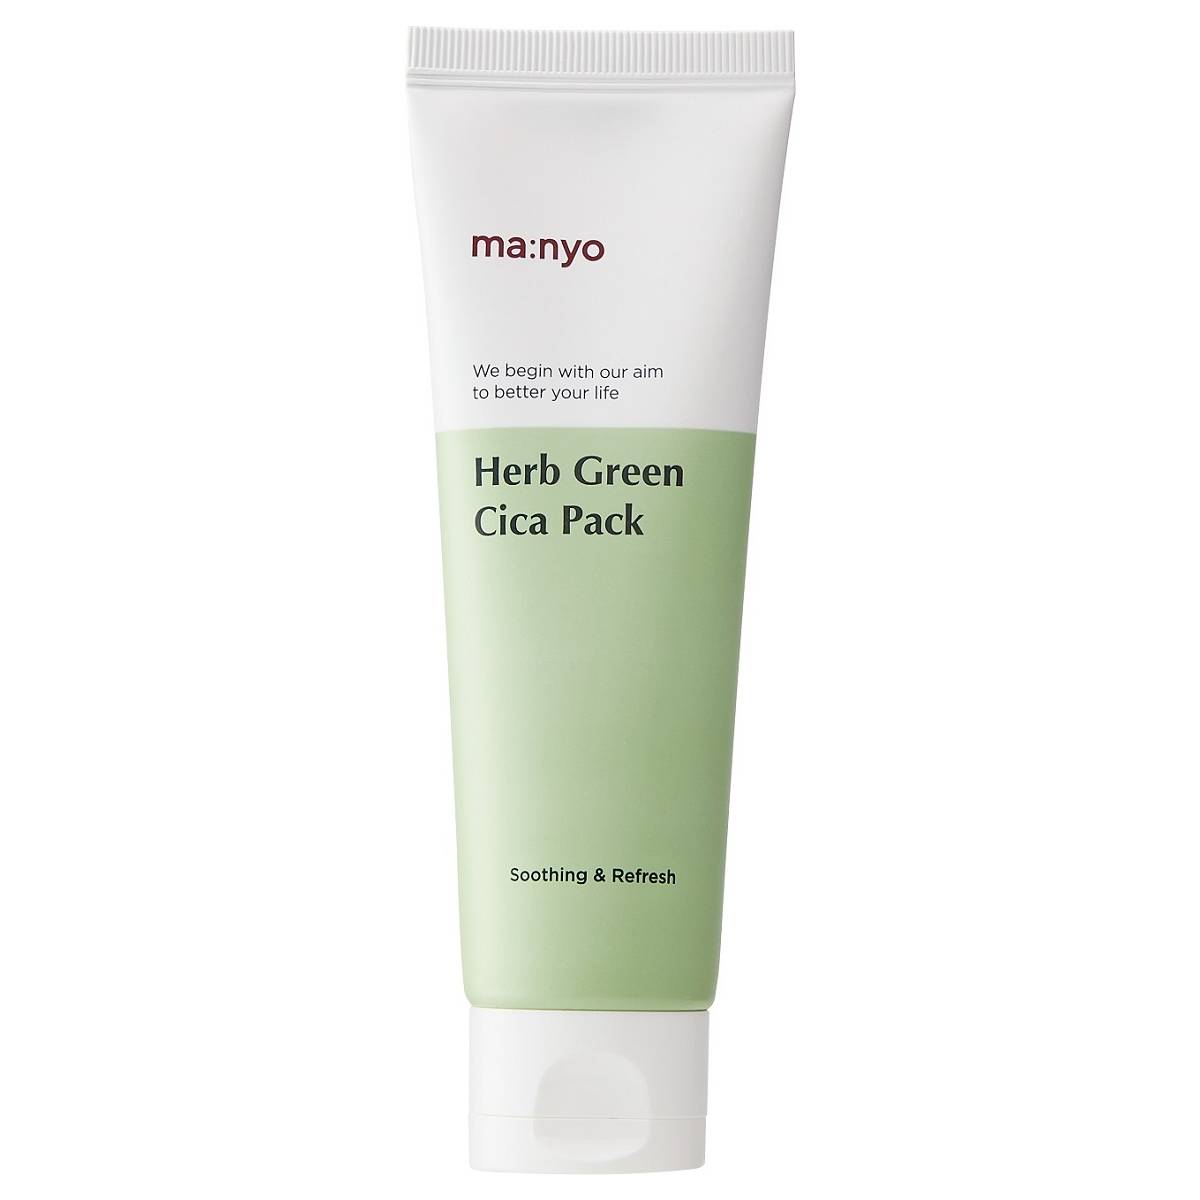 цена Manyo Успокаивающая маска с экстрактом зеленого чая для проблемной кожи Cica Pack, 75 мл (Manyo, Herb Green)